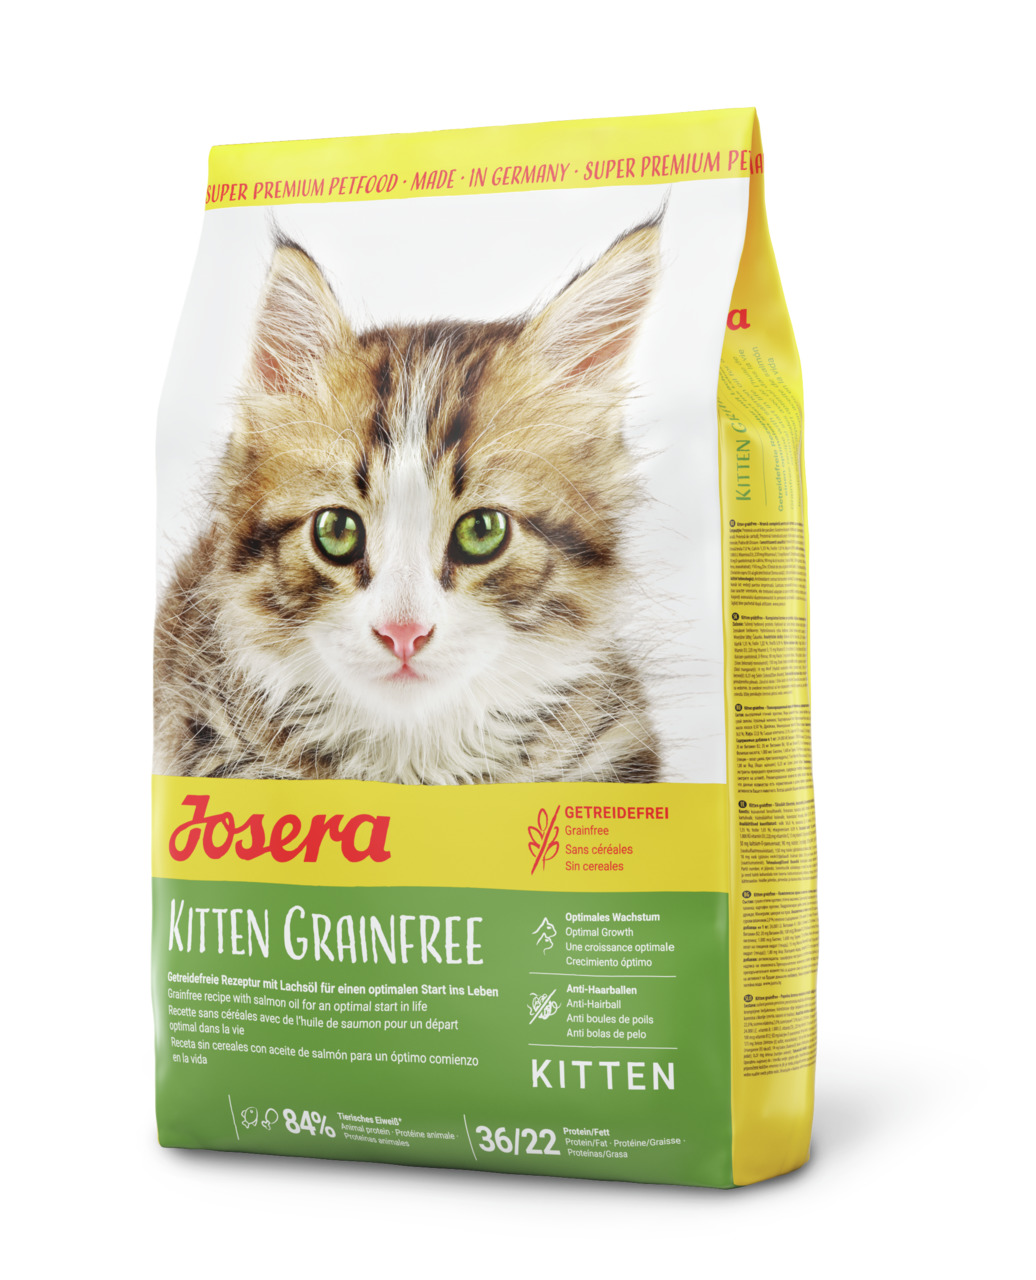 Josera Kitten Grainfree Katzen Trockenfutter 400 g